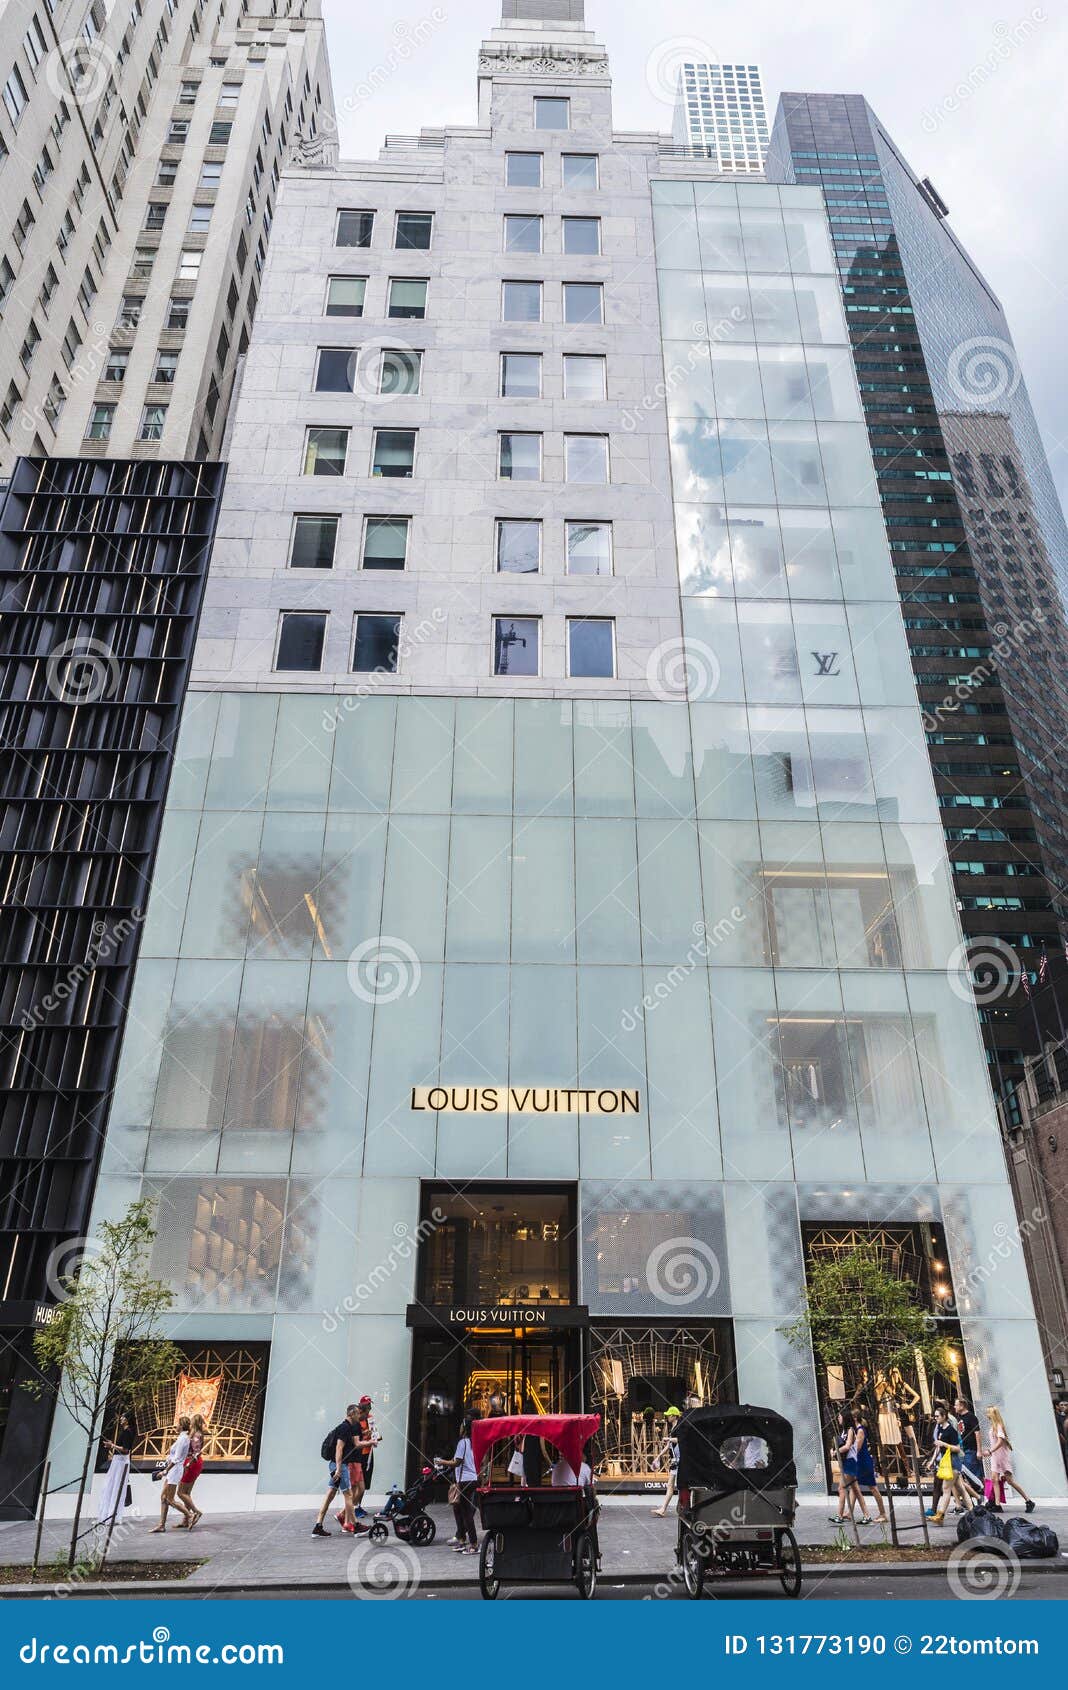 Louis Vuitton Fifth Avenue New York City Ny | Wydział Cybernetyki